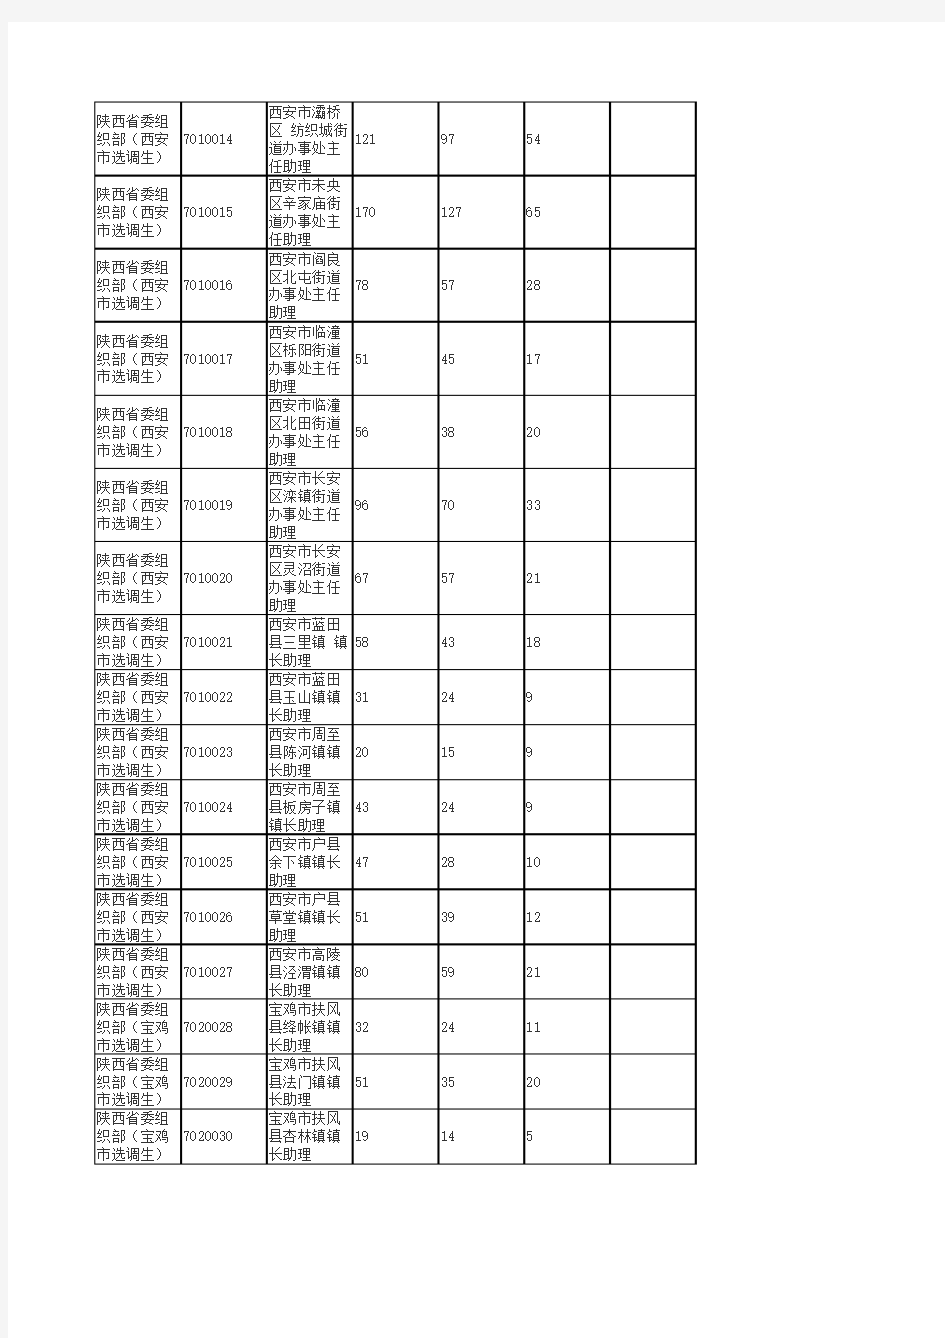 截至2012年3月31日上午7时各职位报名统计情况